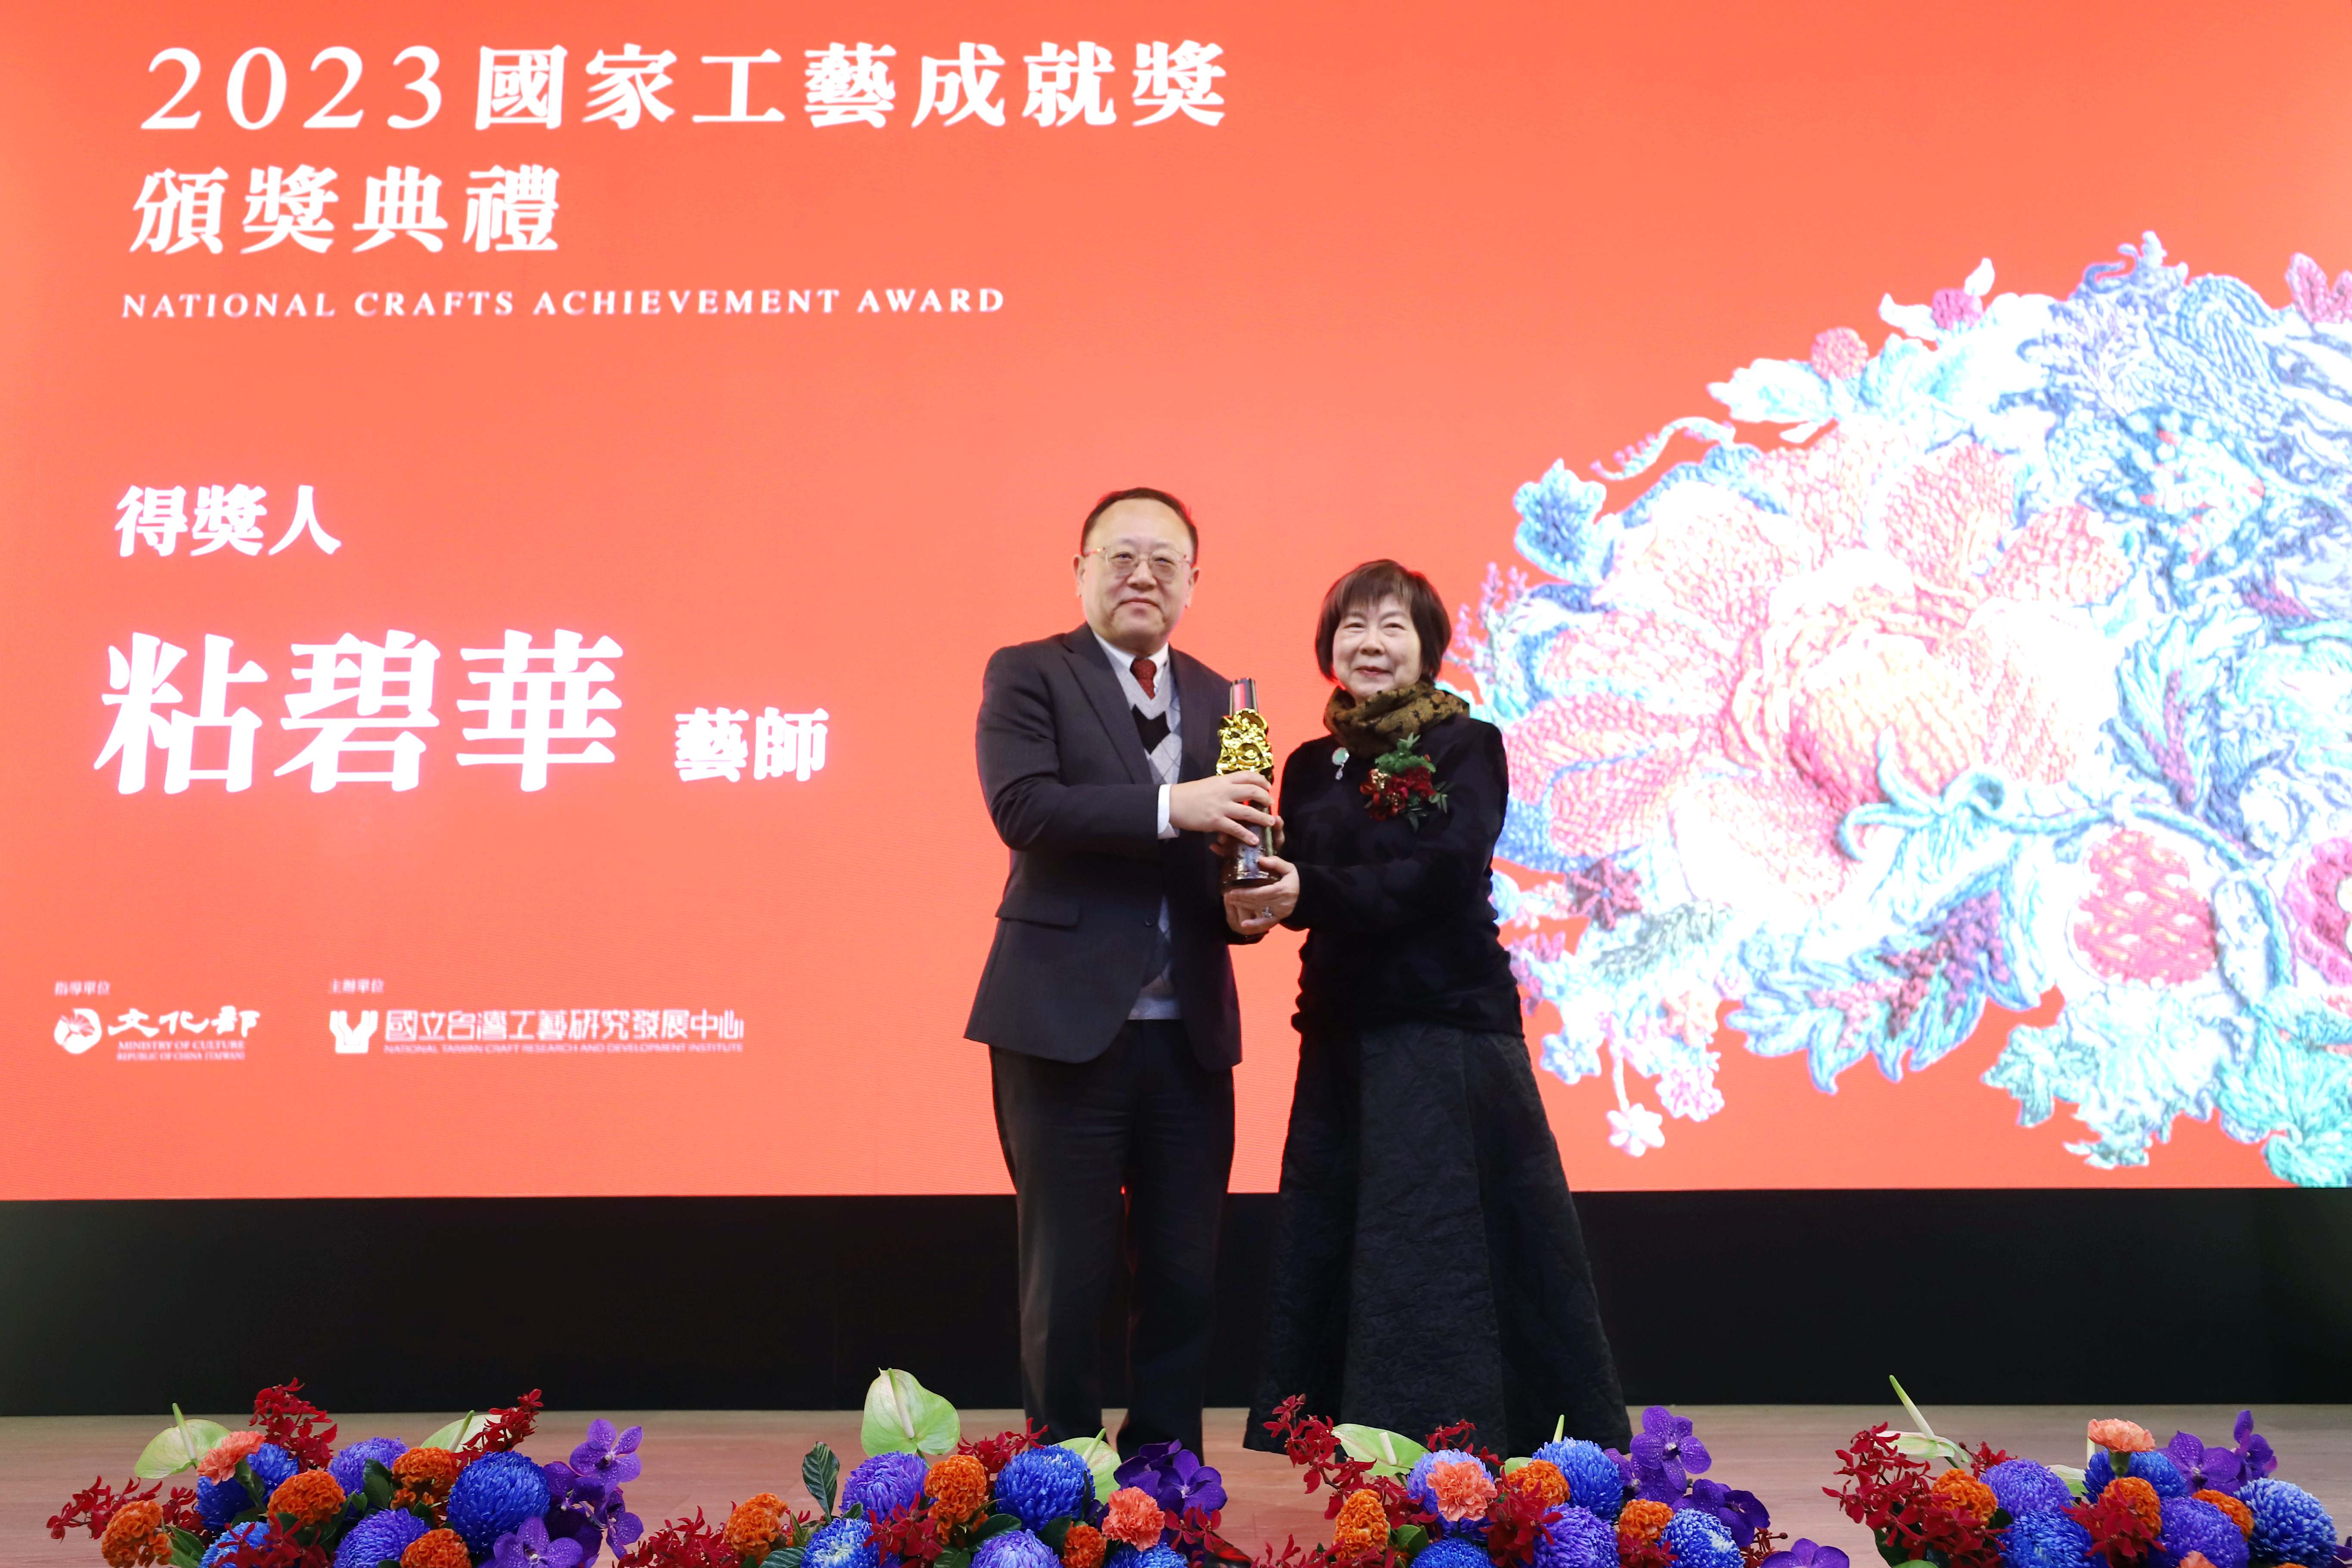 粘碧華さん、2023年の国家工芸成就賞を受賞